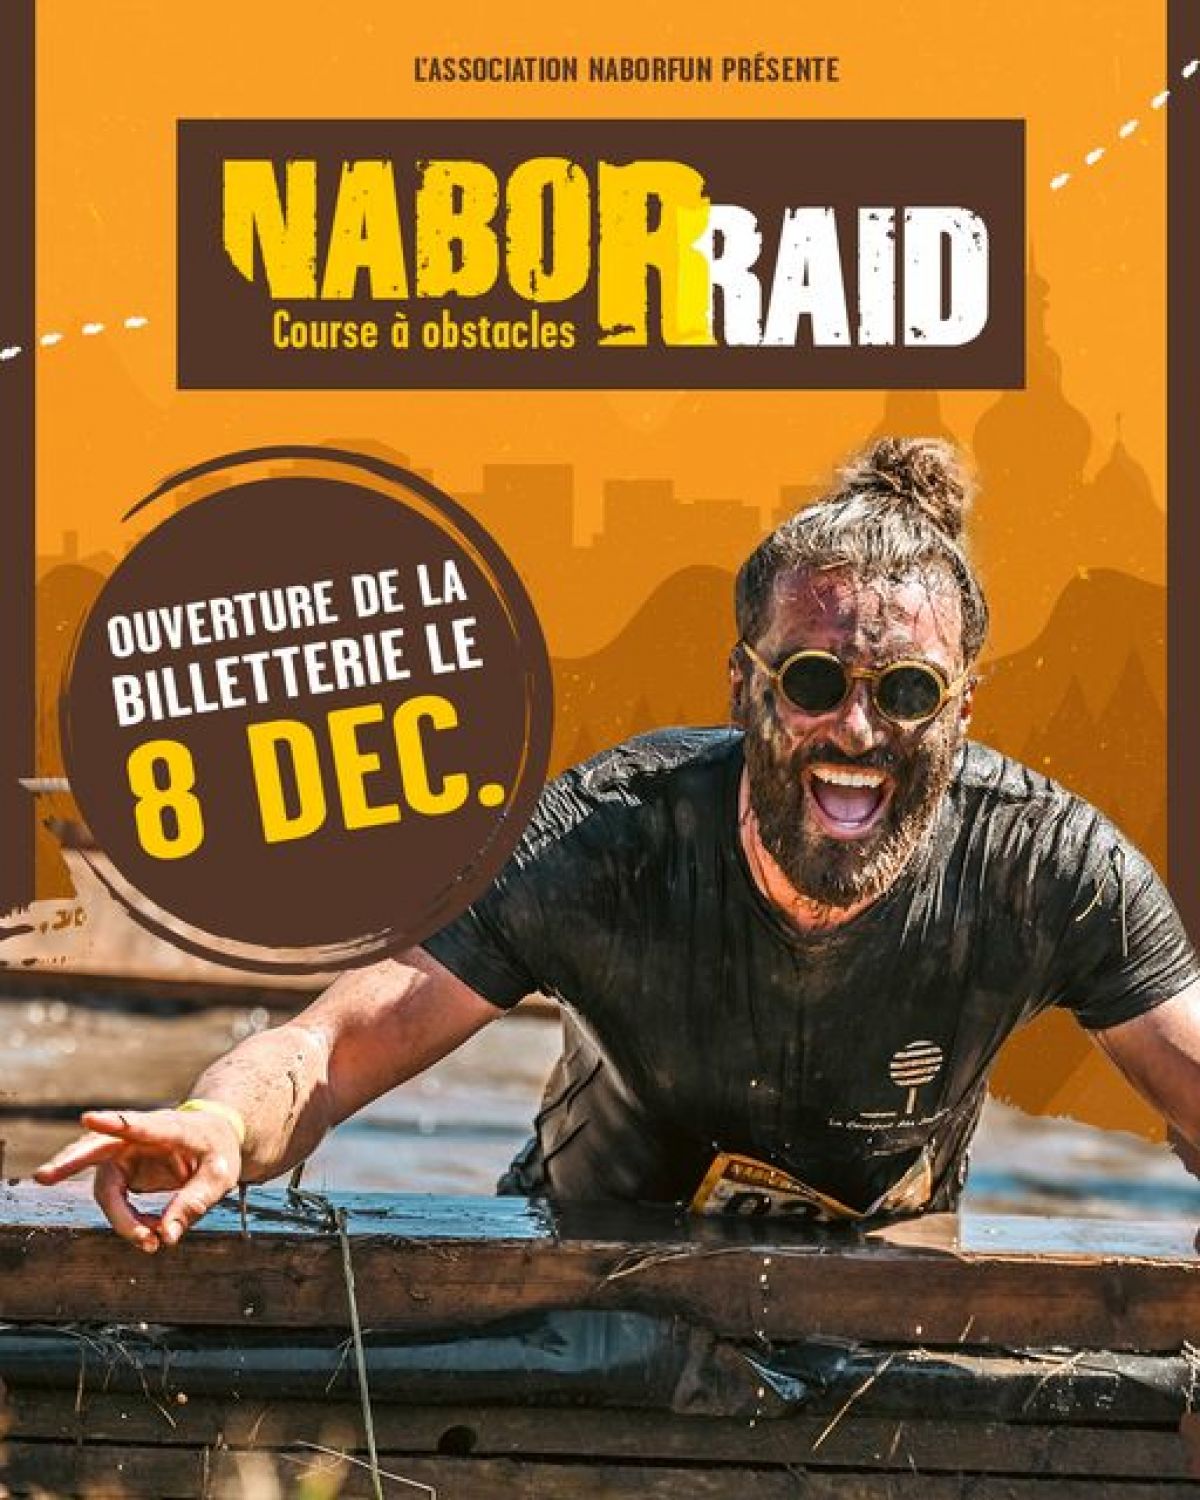 La billetterie pour la prochaine édition du NaborRaid ouvre aujourd’hui 